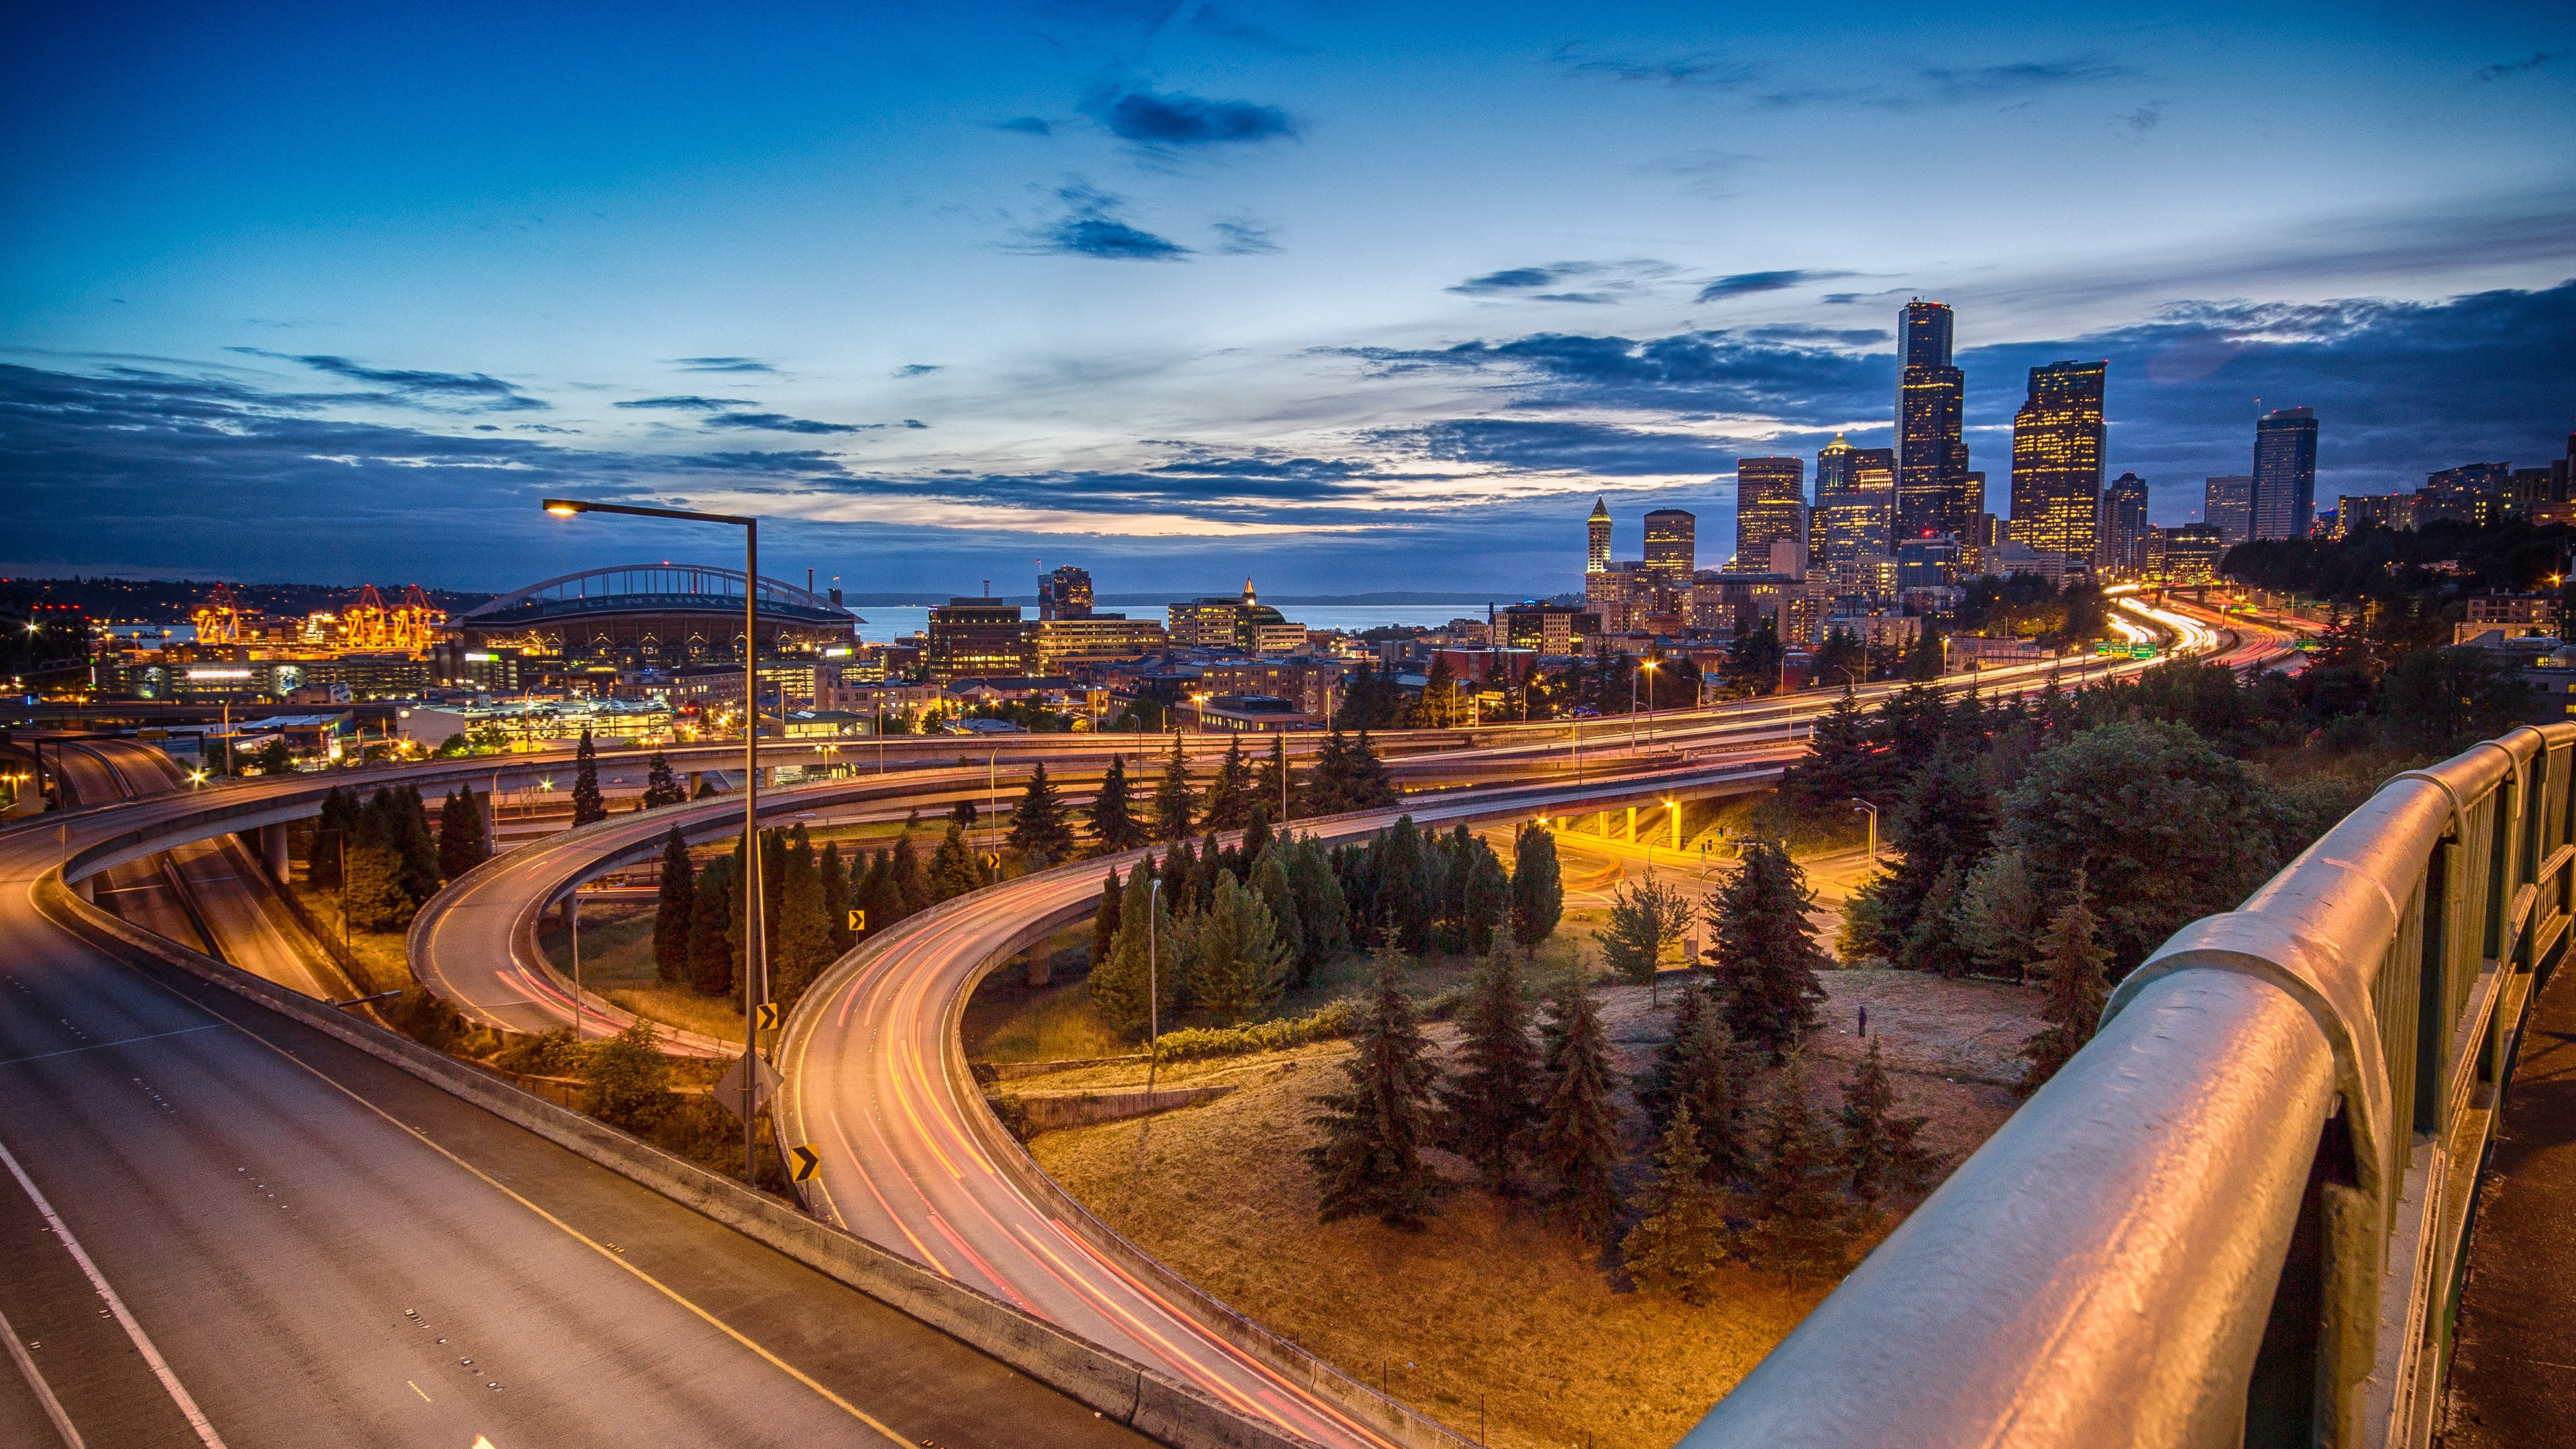 Download wallpaper: Seattle skyline 3840x2160